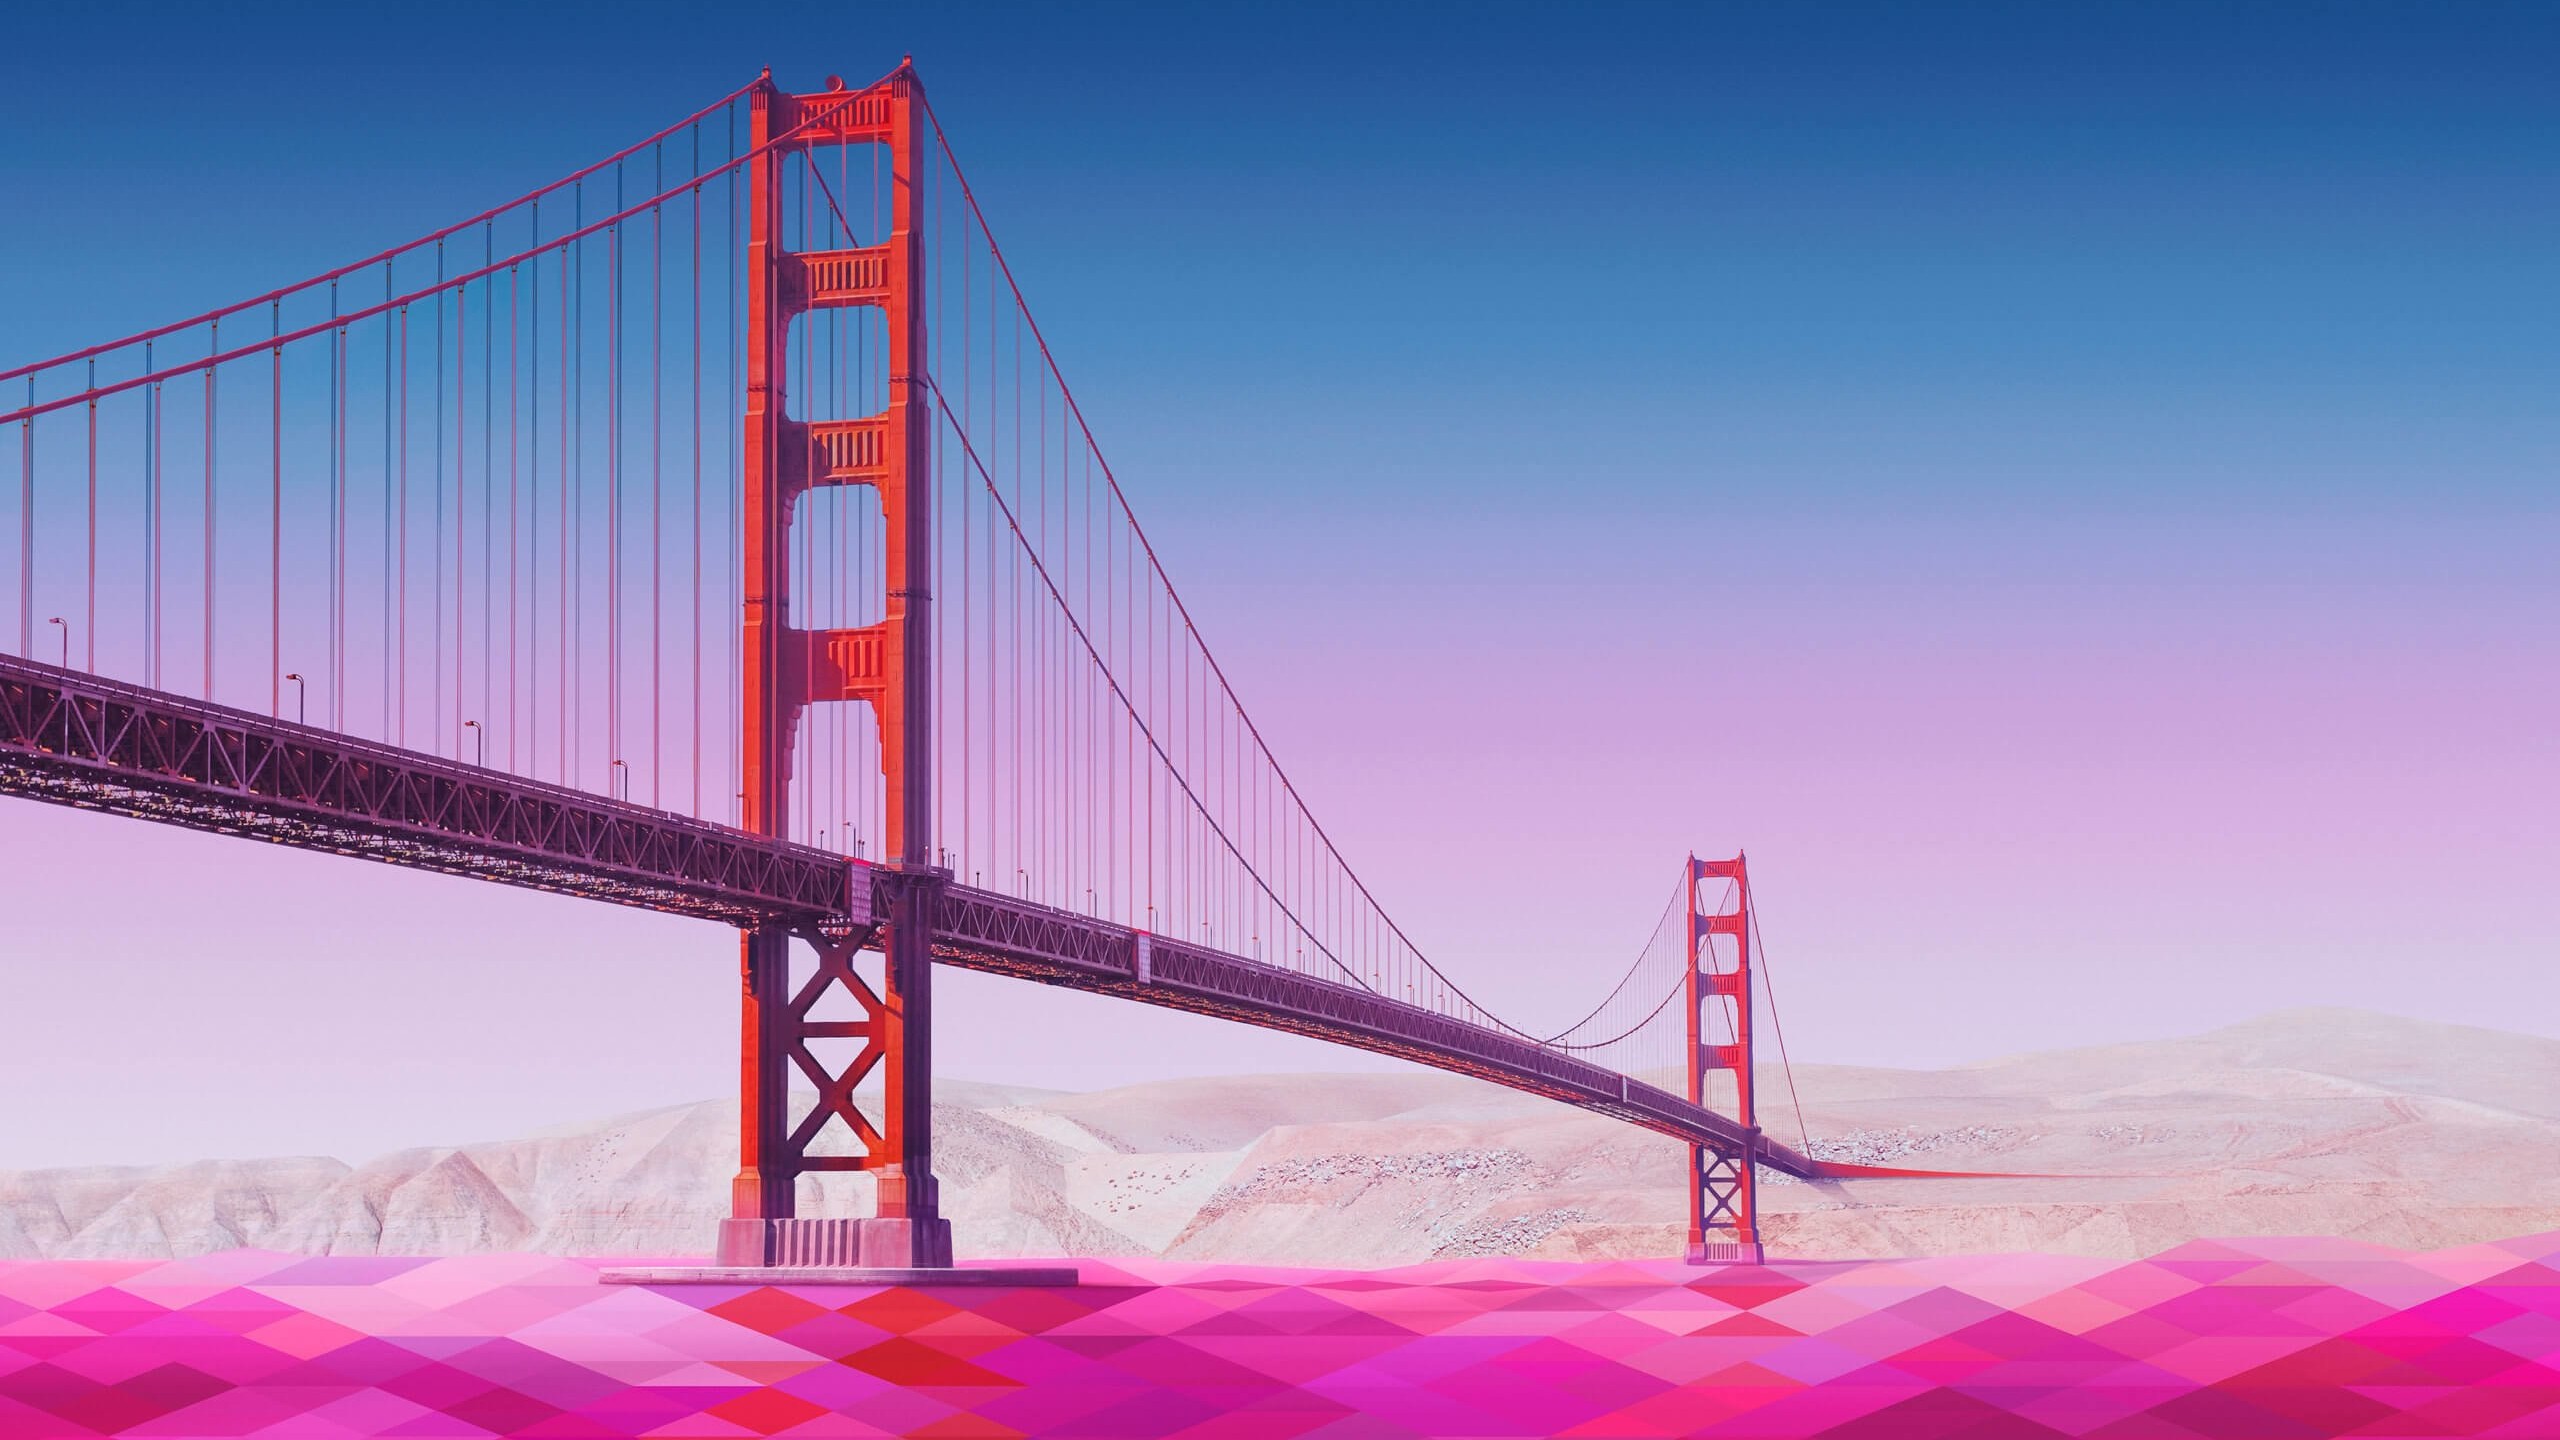 Geometric Golden Gate Bridge Wallpaper for Social Media YouTube Channel Art